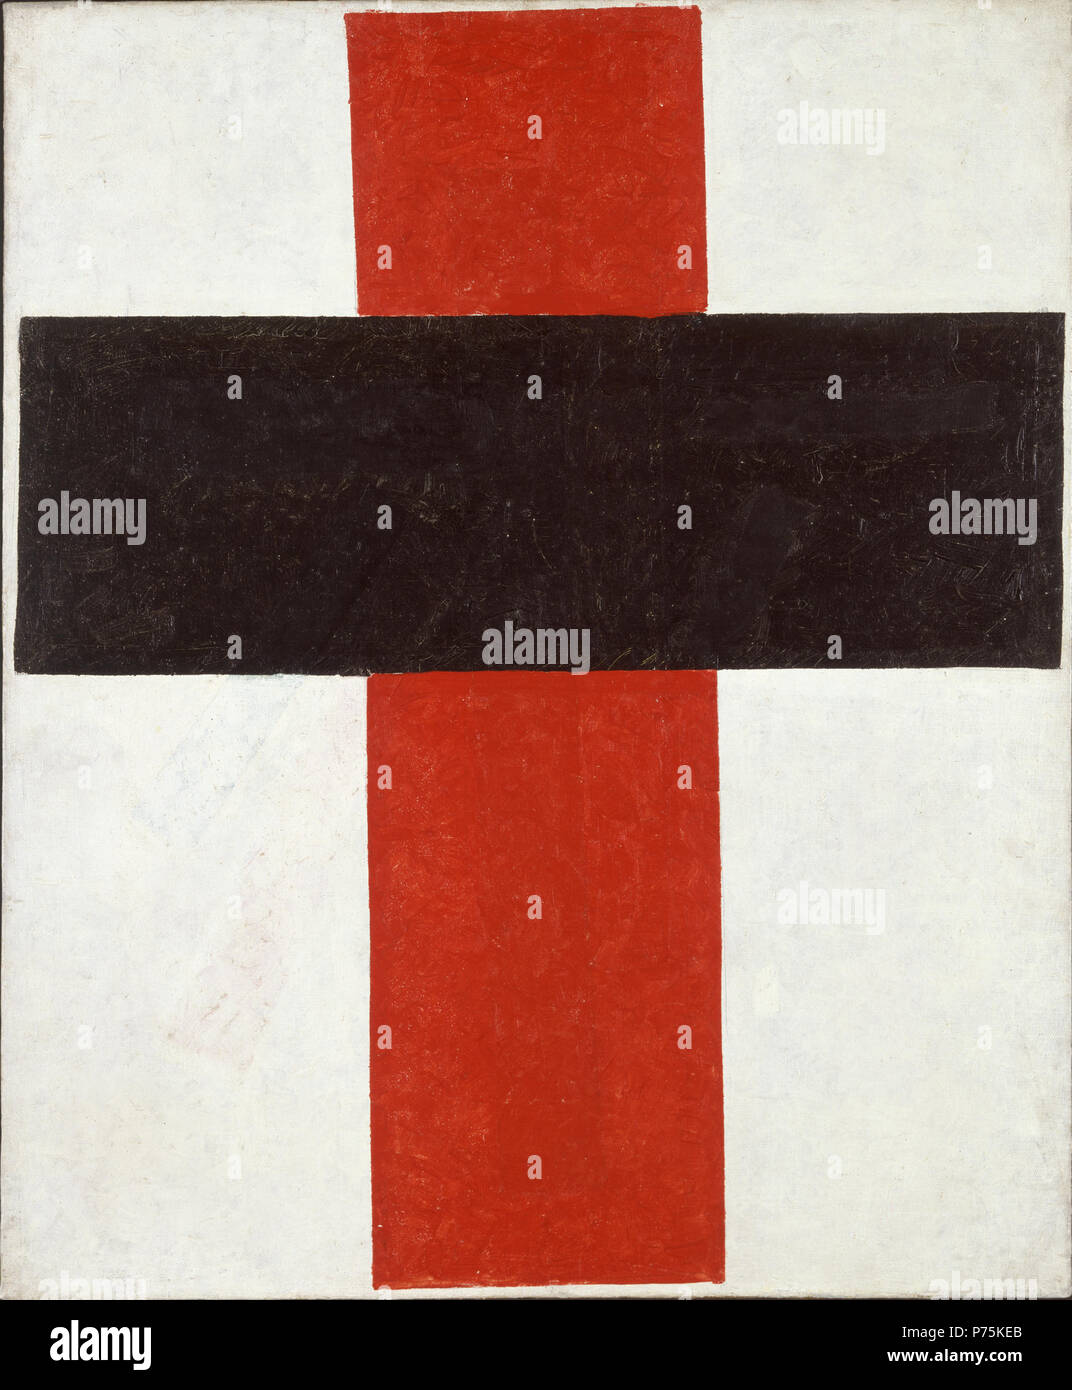 . Ieratico Croce Suprematist . grande croce in nero su rosso su bianco . 1920-21 161 Malevitj Foto Stock